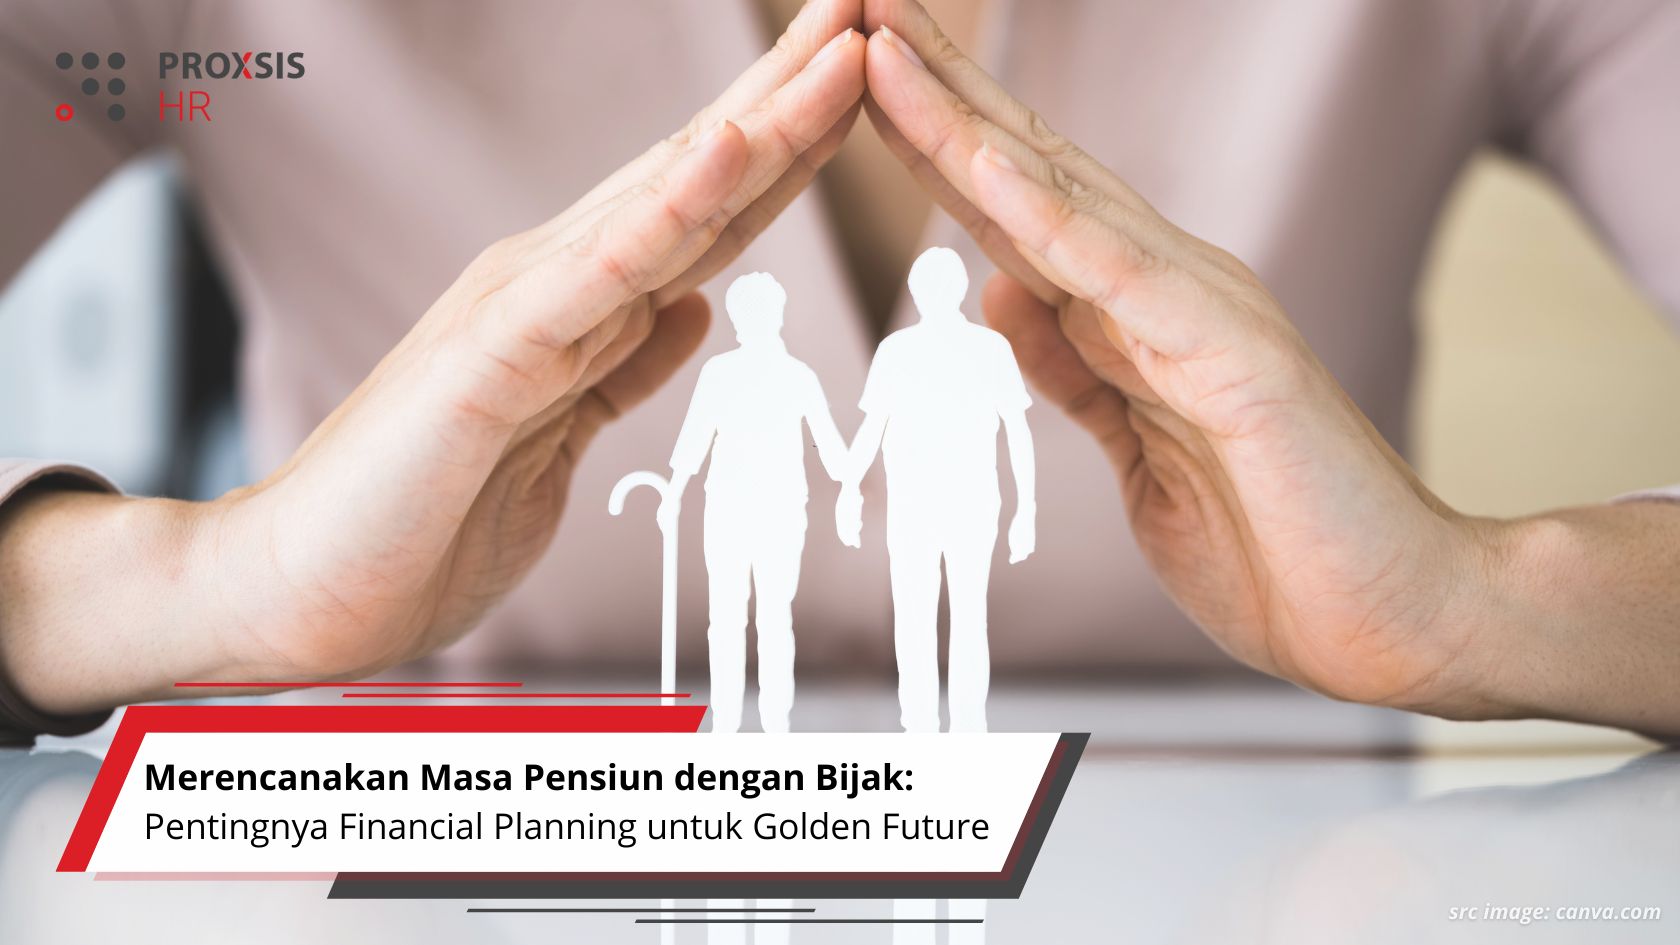 Merencanakan Masa Pensiun dengan Bijak: Pentingnya Financial Planning untuk Golden Future